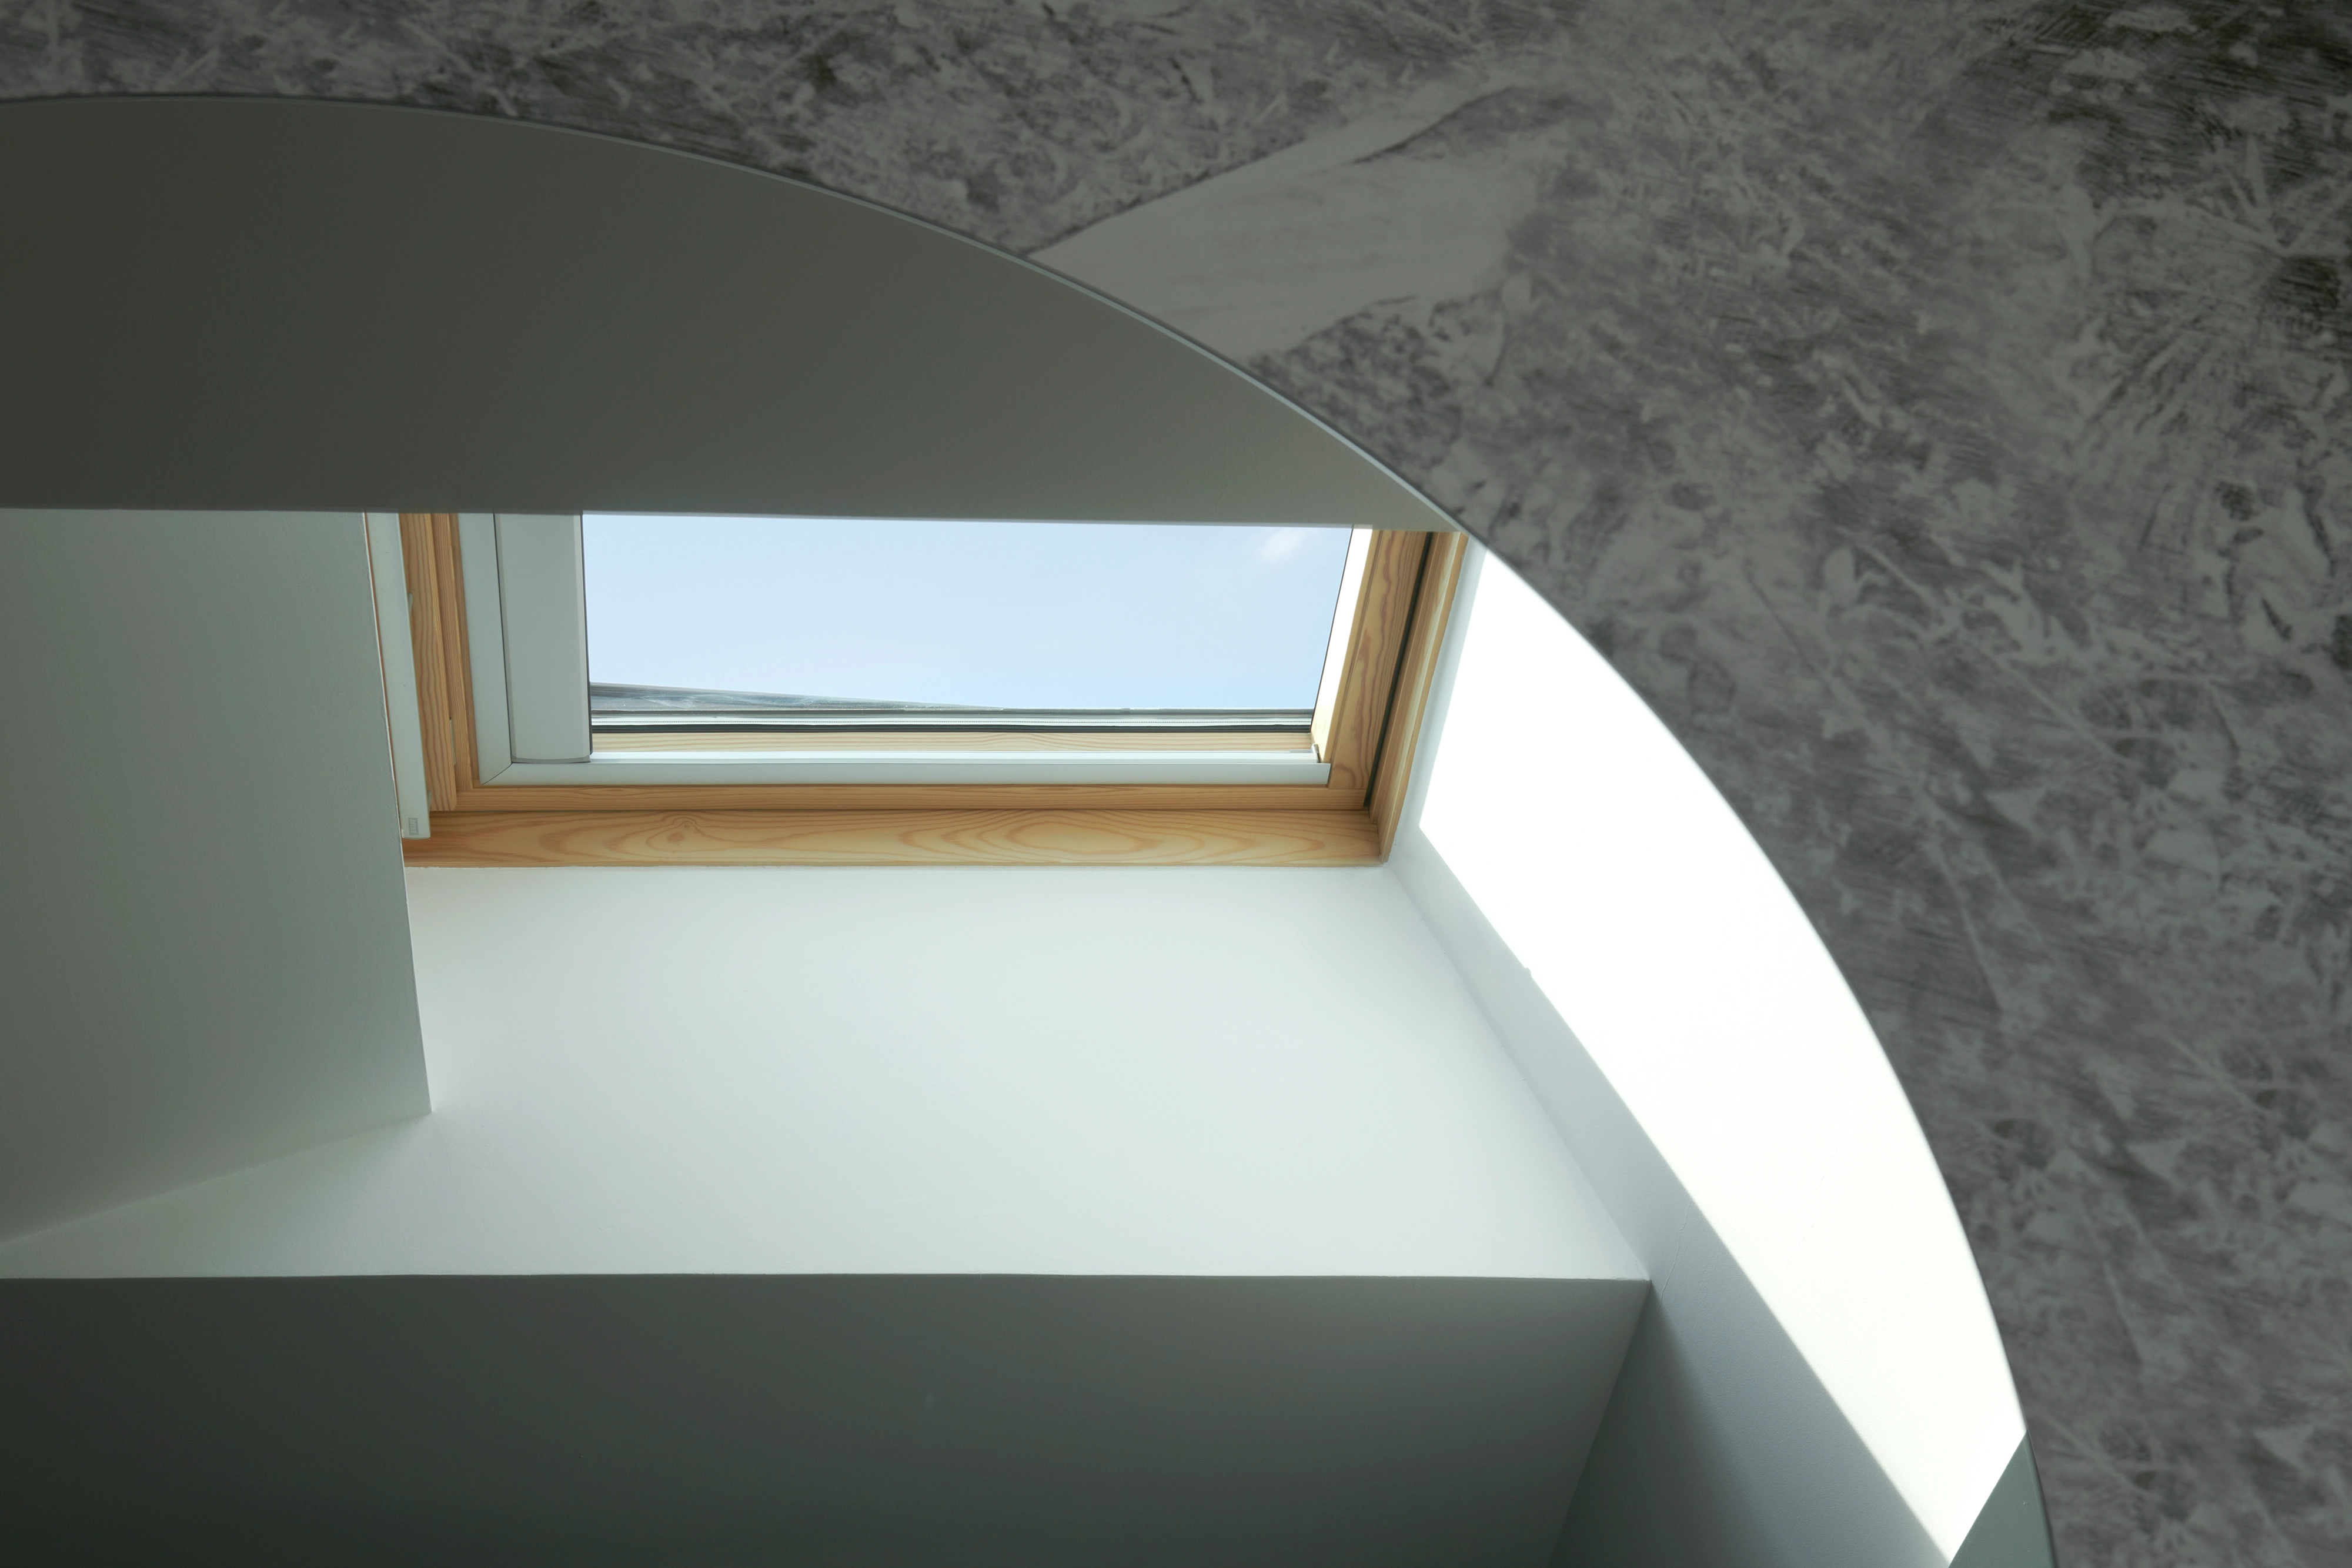 Chambre moderne avec une fenêtre de toit VELUX offrant une lumière naturelle abondante.